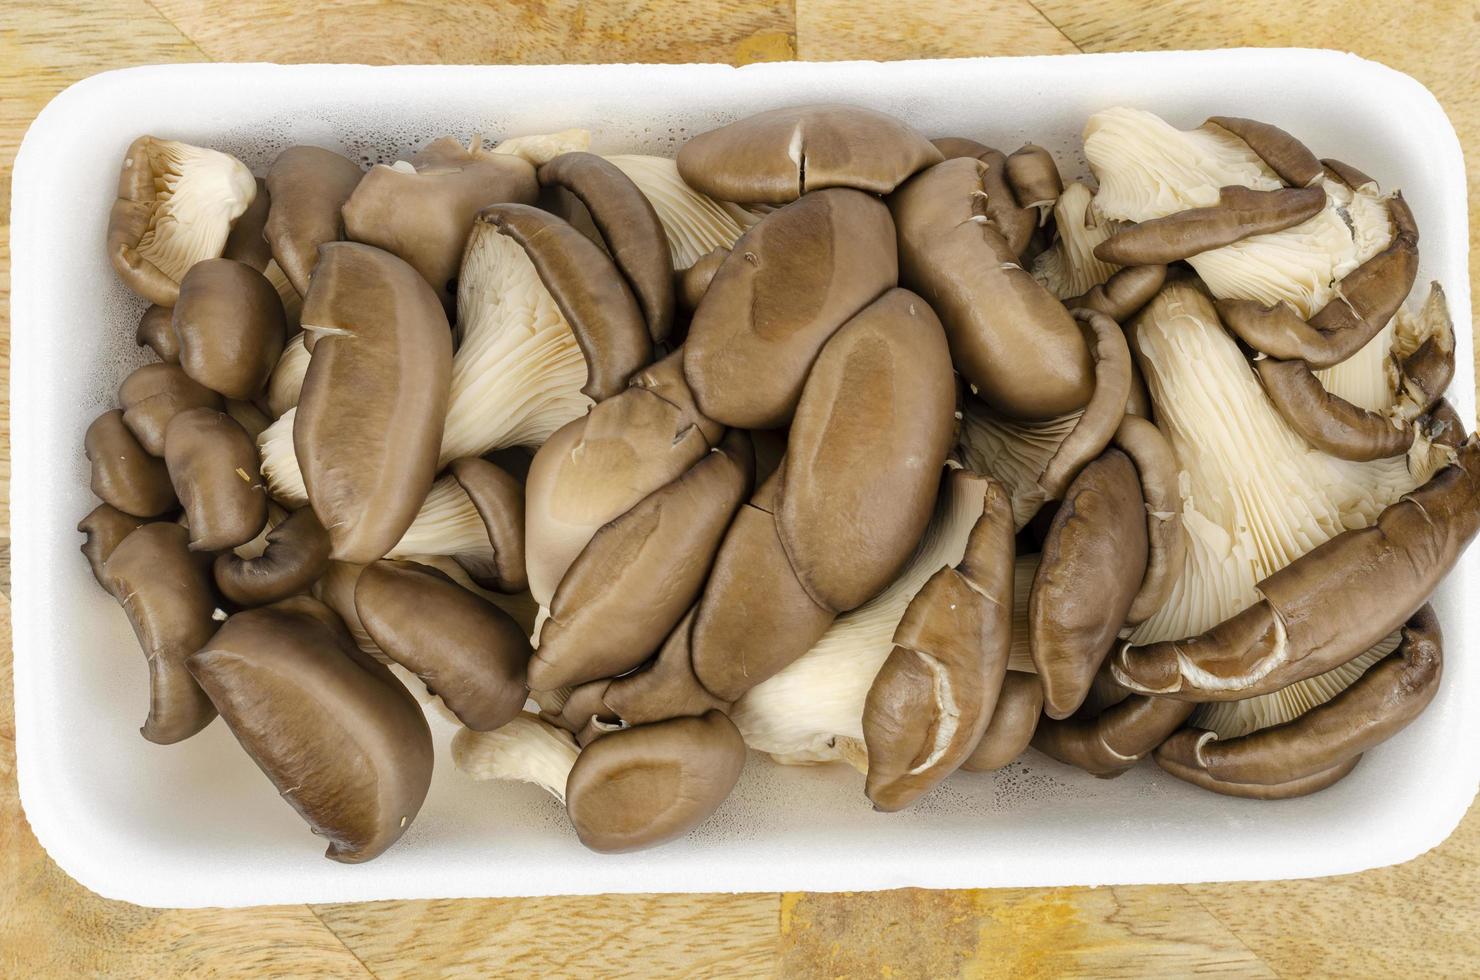 funghi ostrica coltivati grigi freschi per cucina. foto in studio